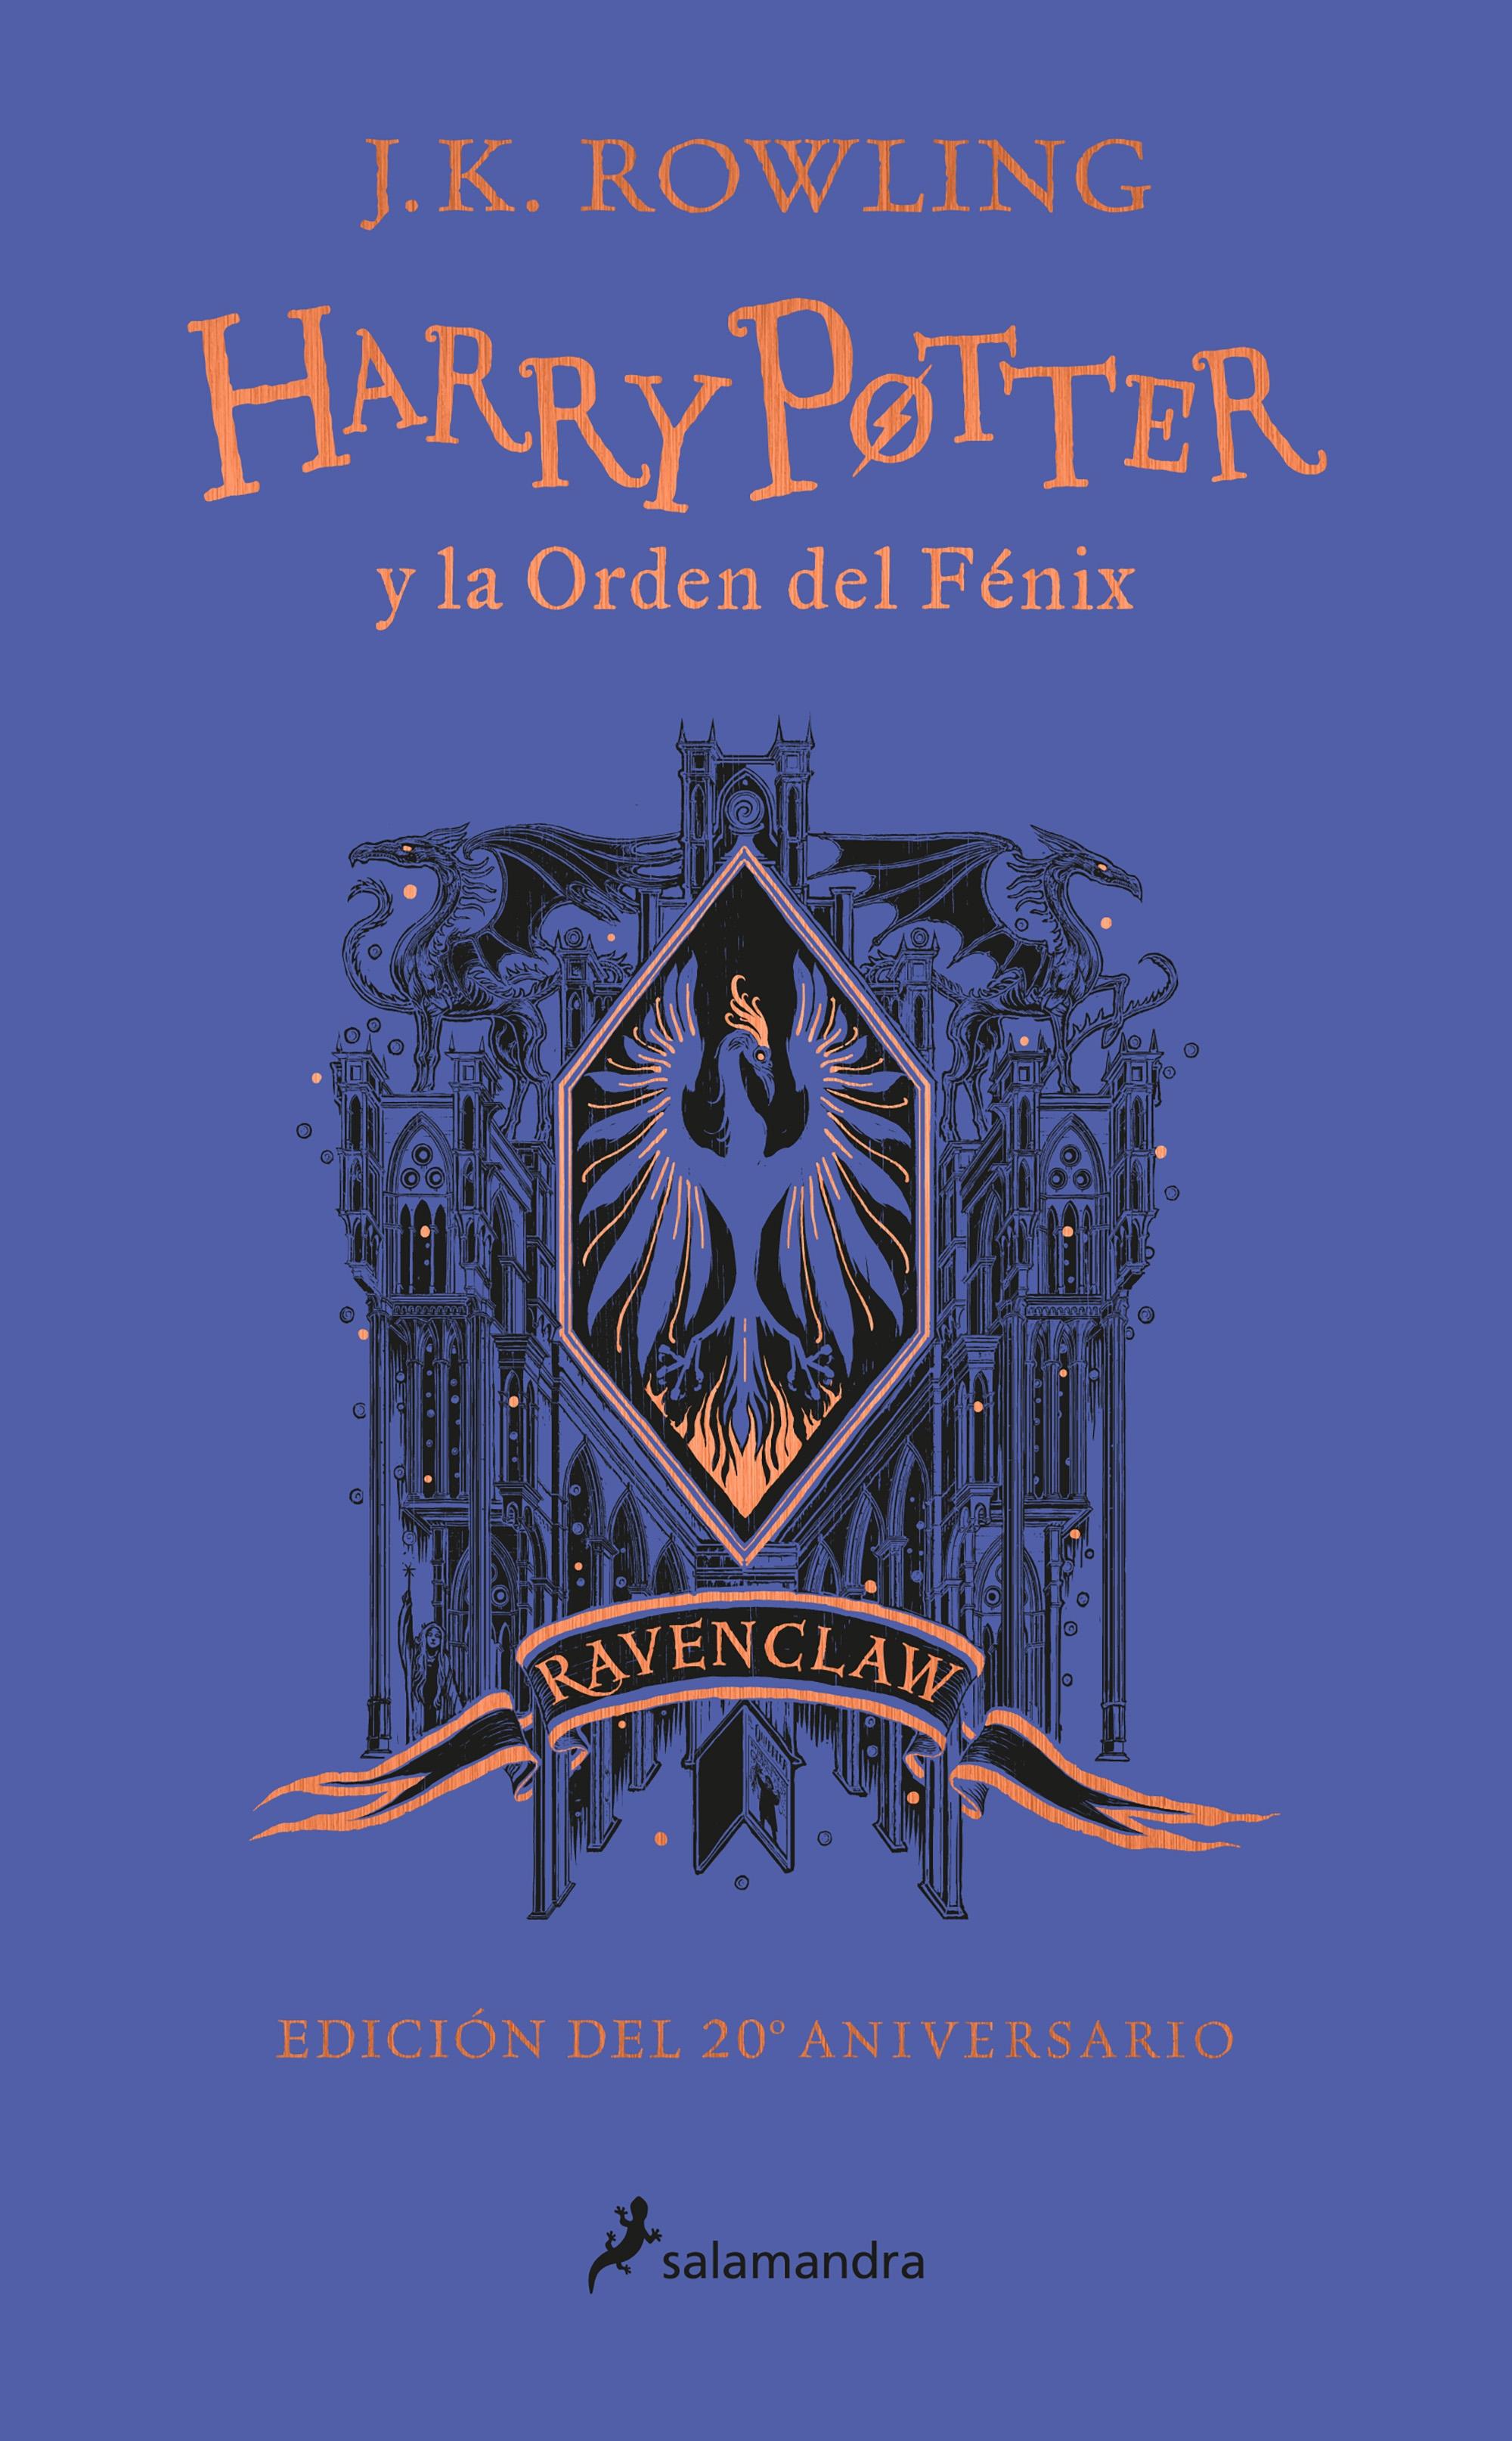 Harry Potter y la Orden del Fenix Edicion "Edicion Ravenclaw de 20º Aniversario". 